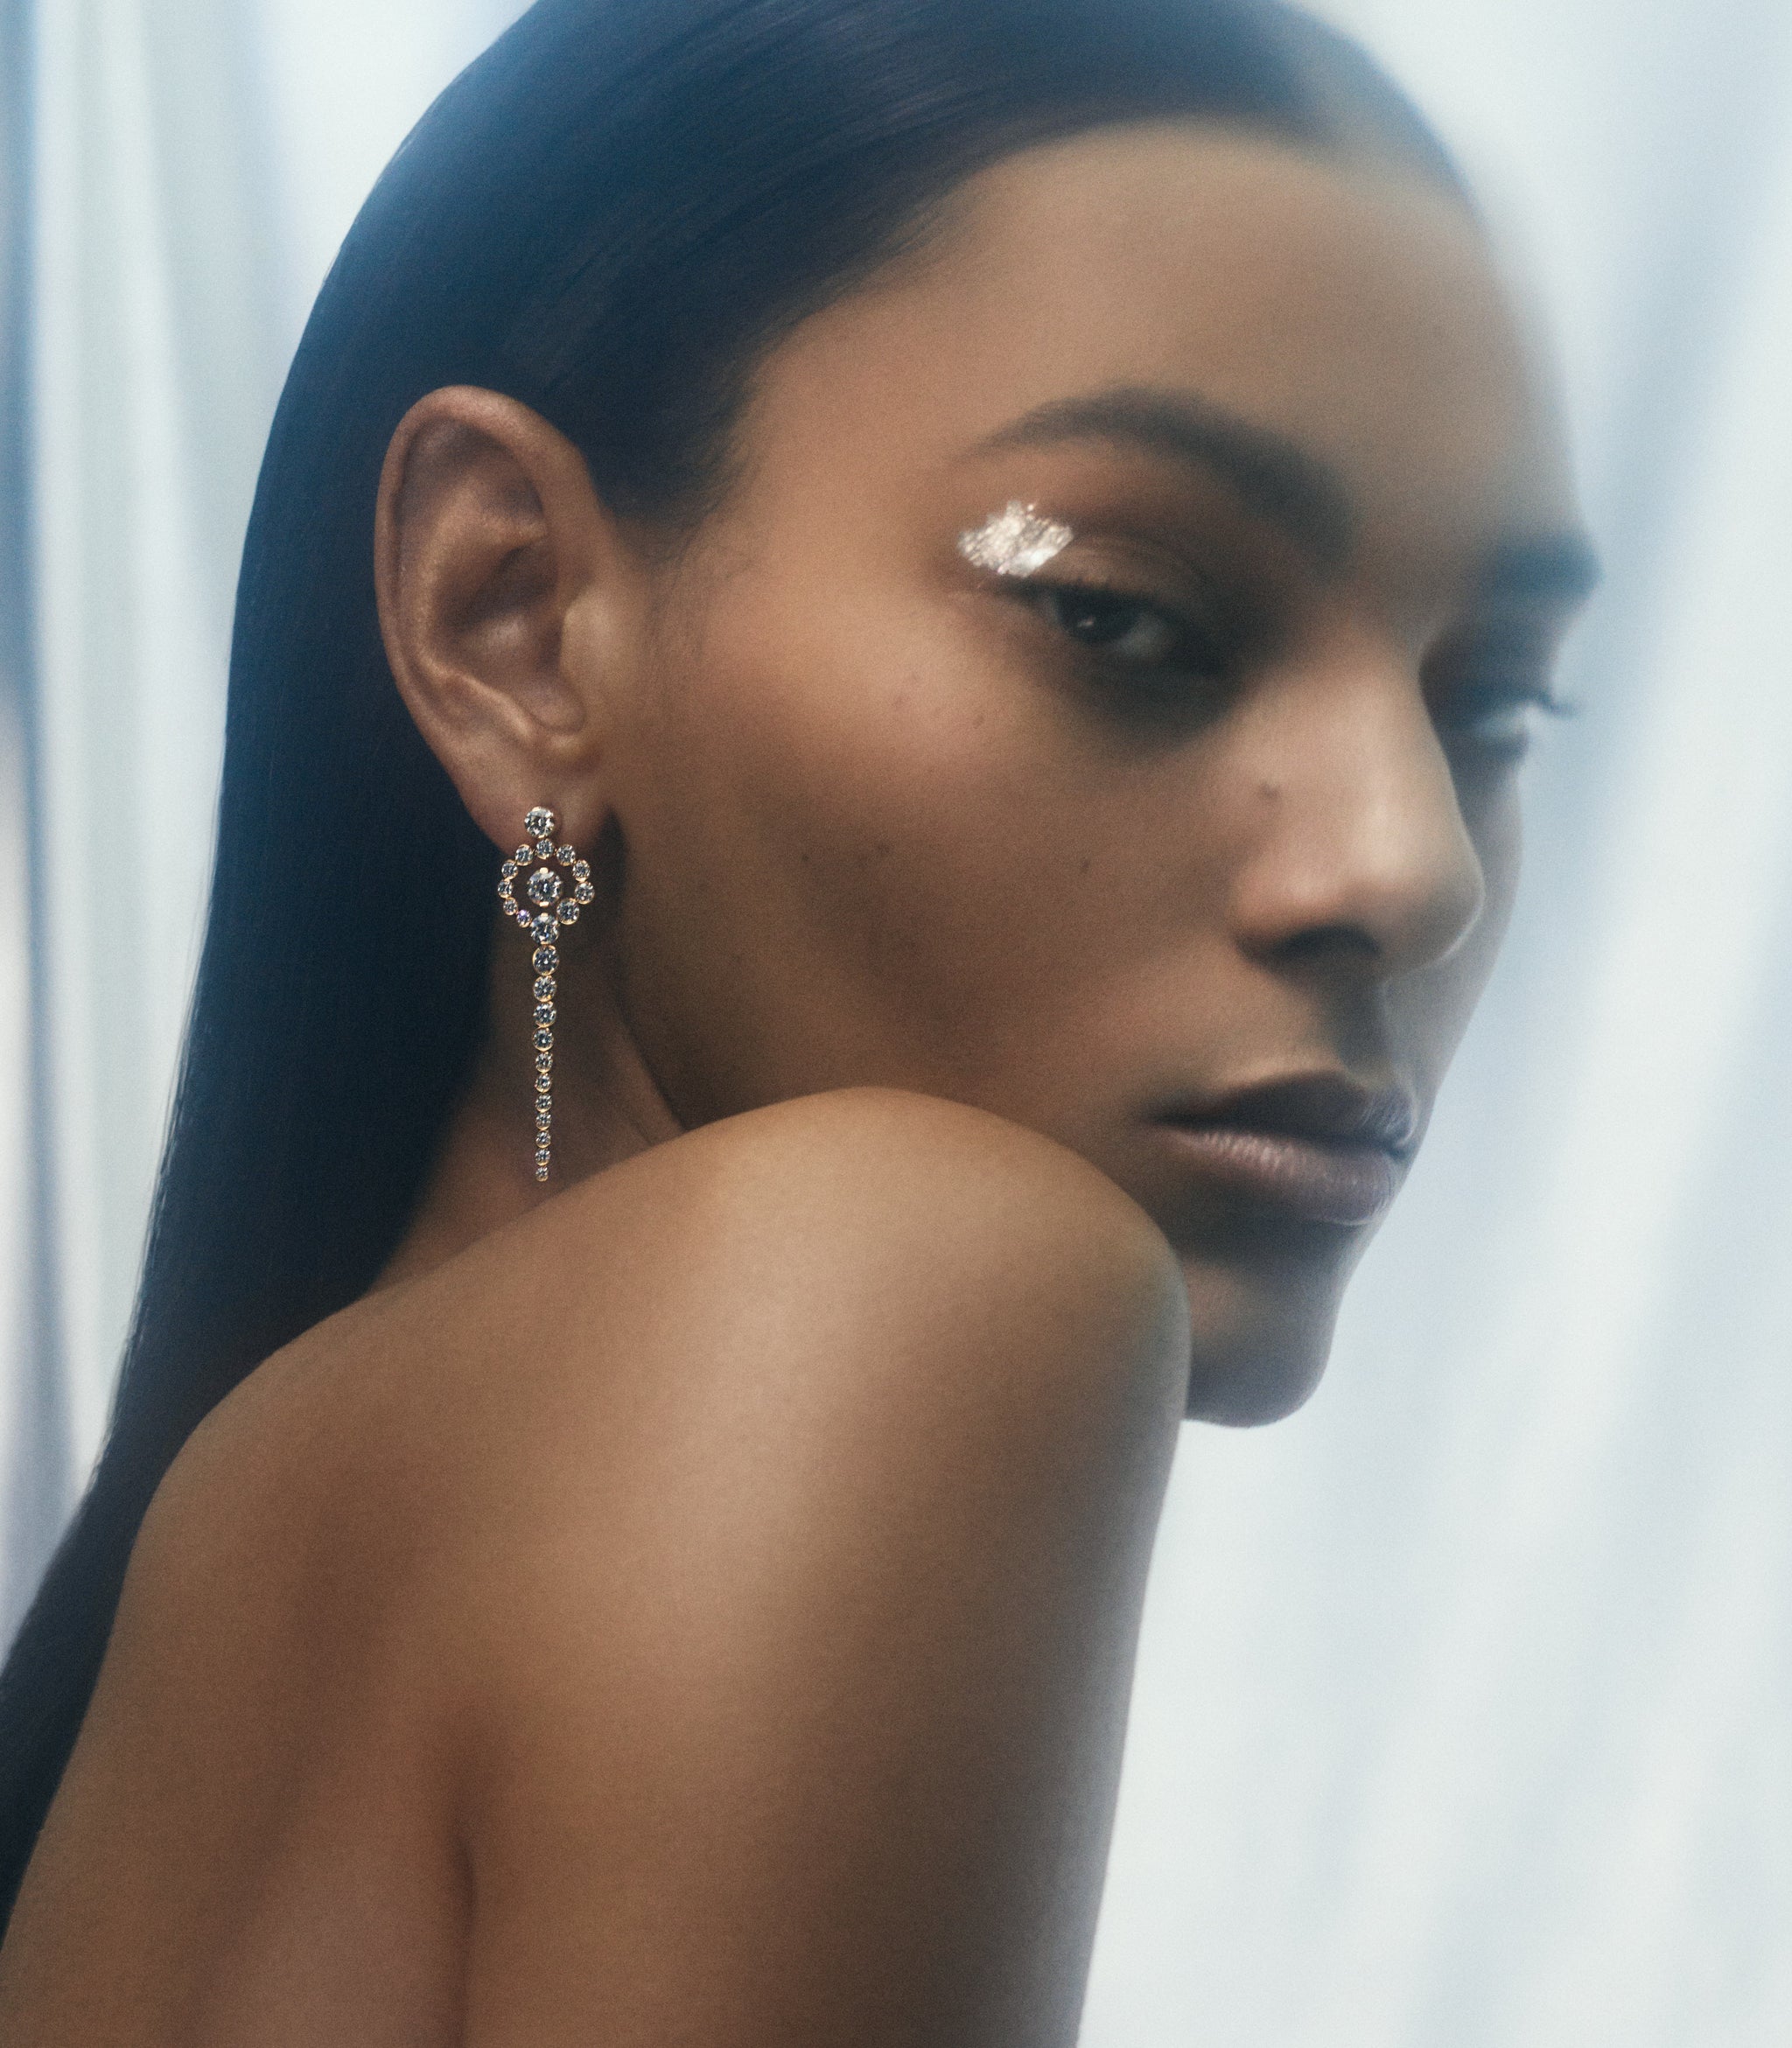 Model is wearing the long Escargot de Reve diamond earrings.